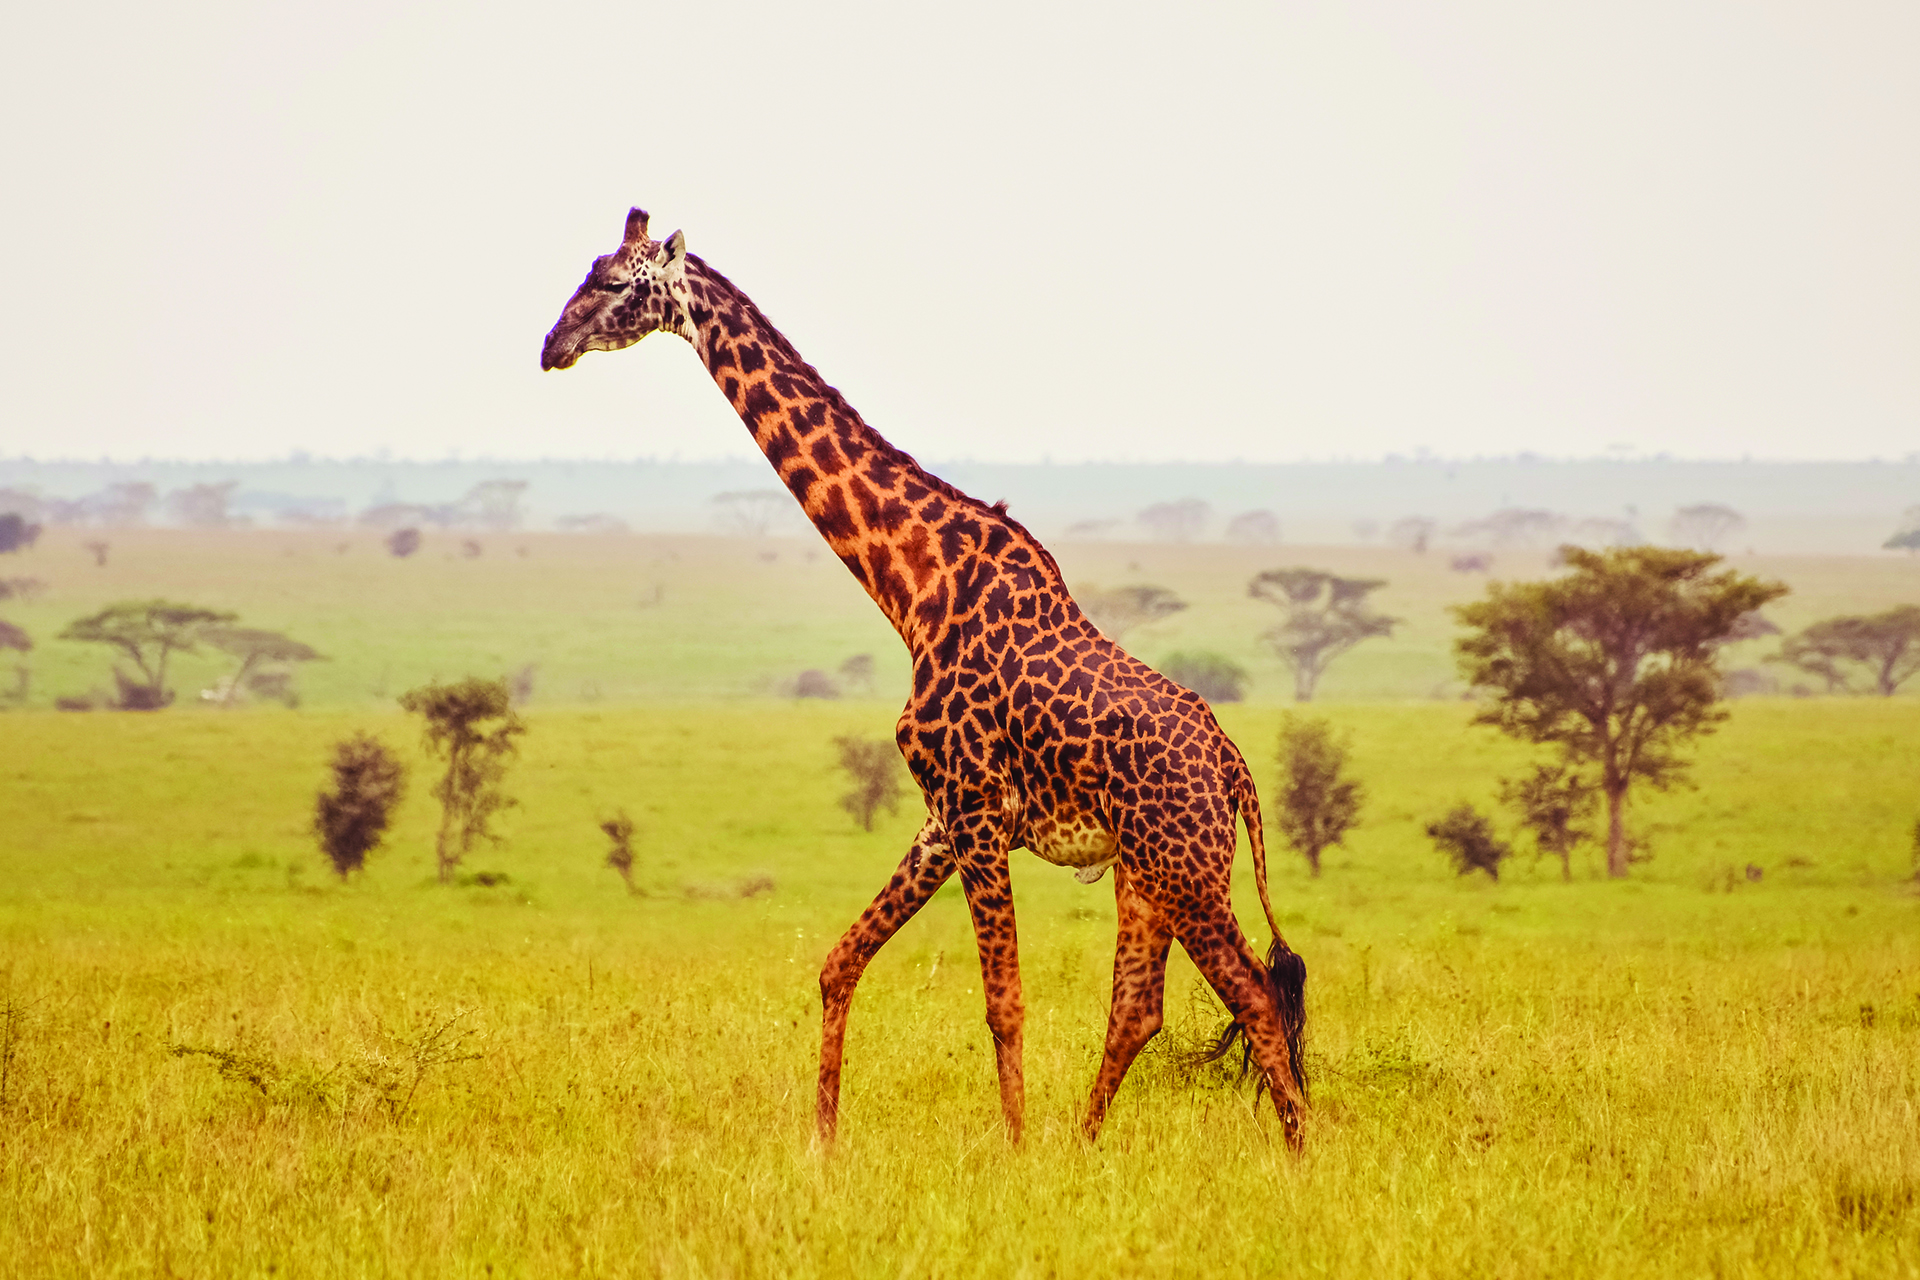 TIME for Kids | Giraffes in Danger?